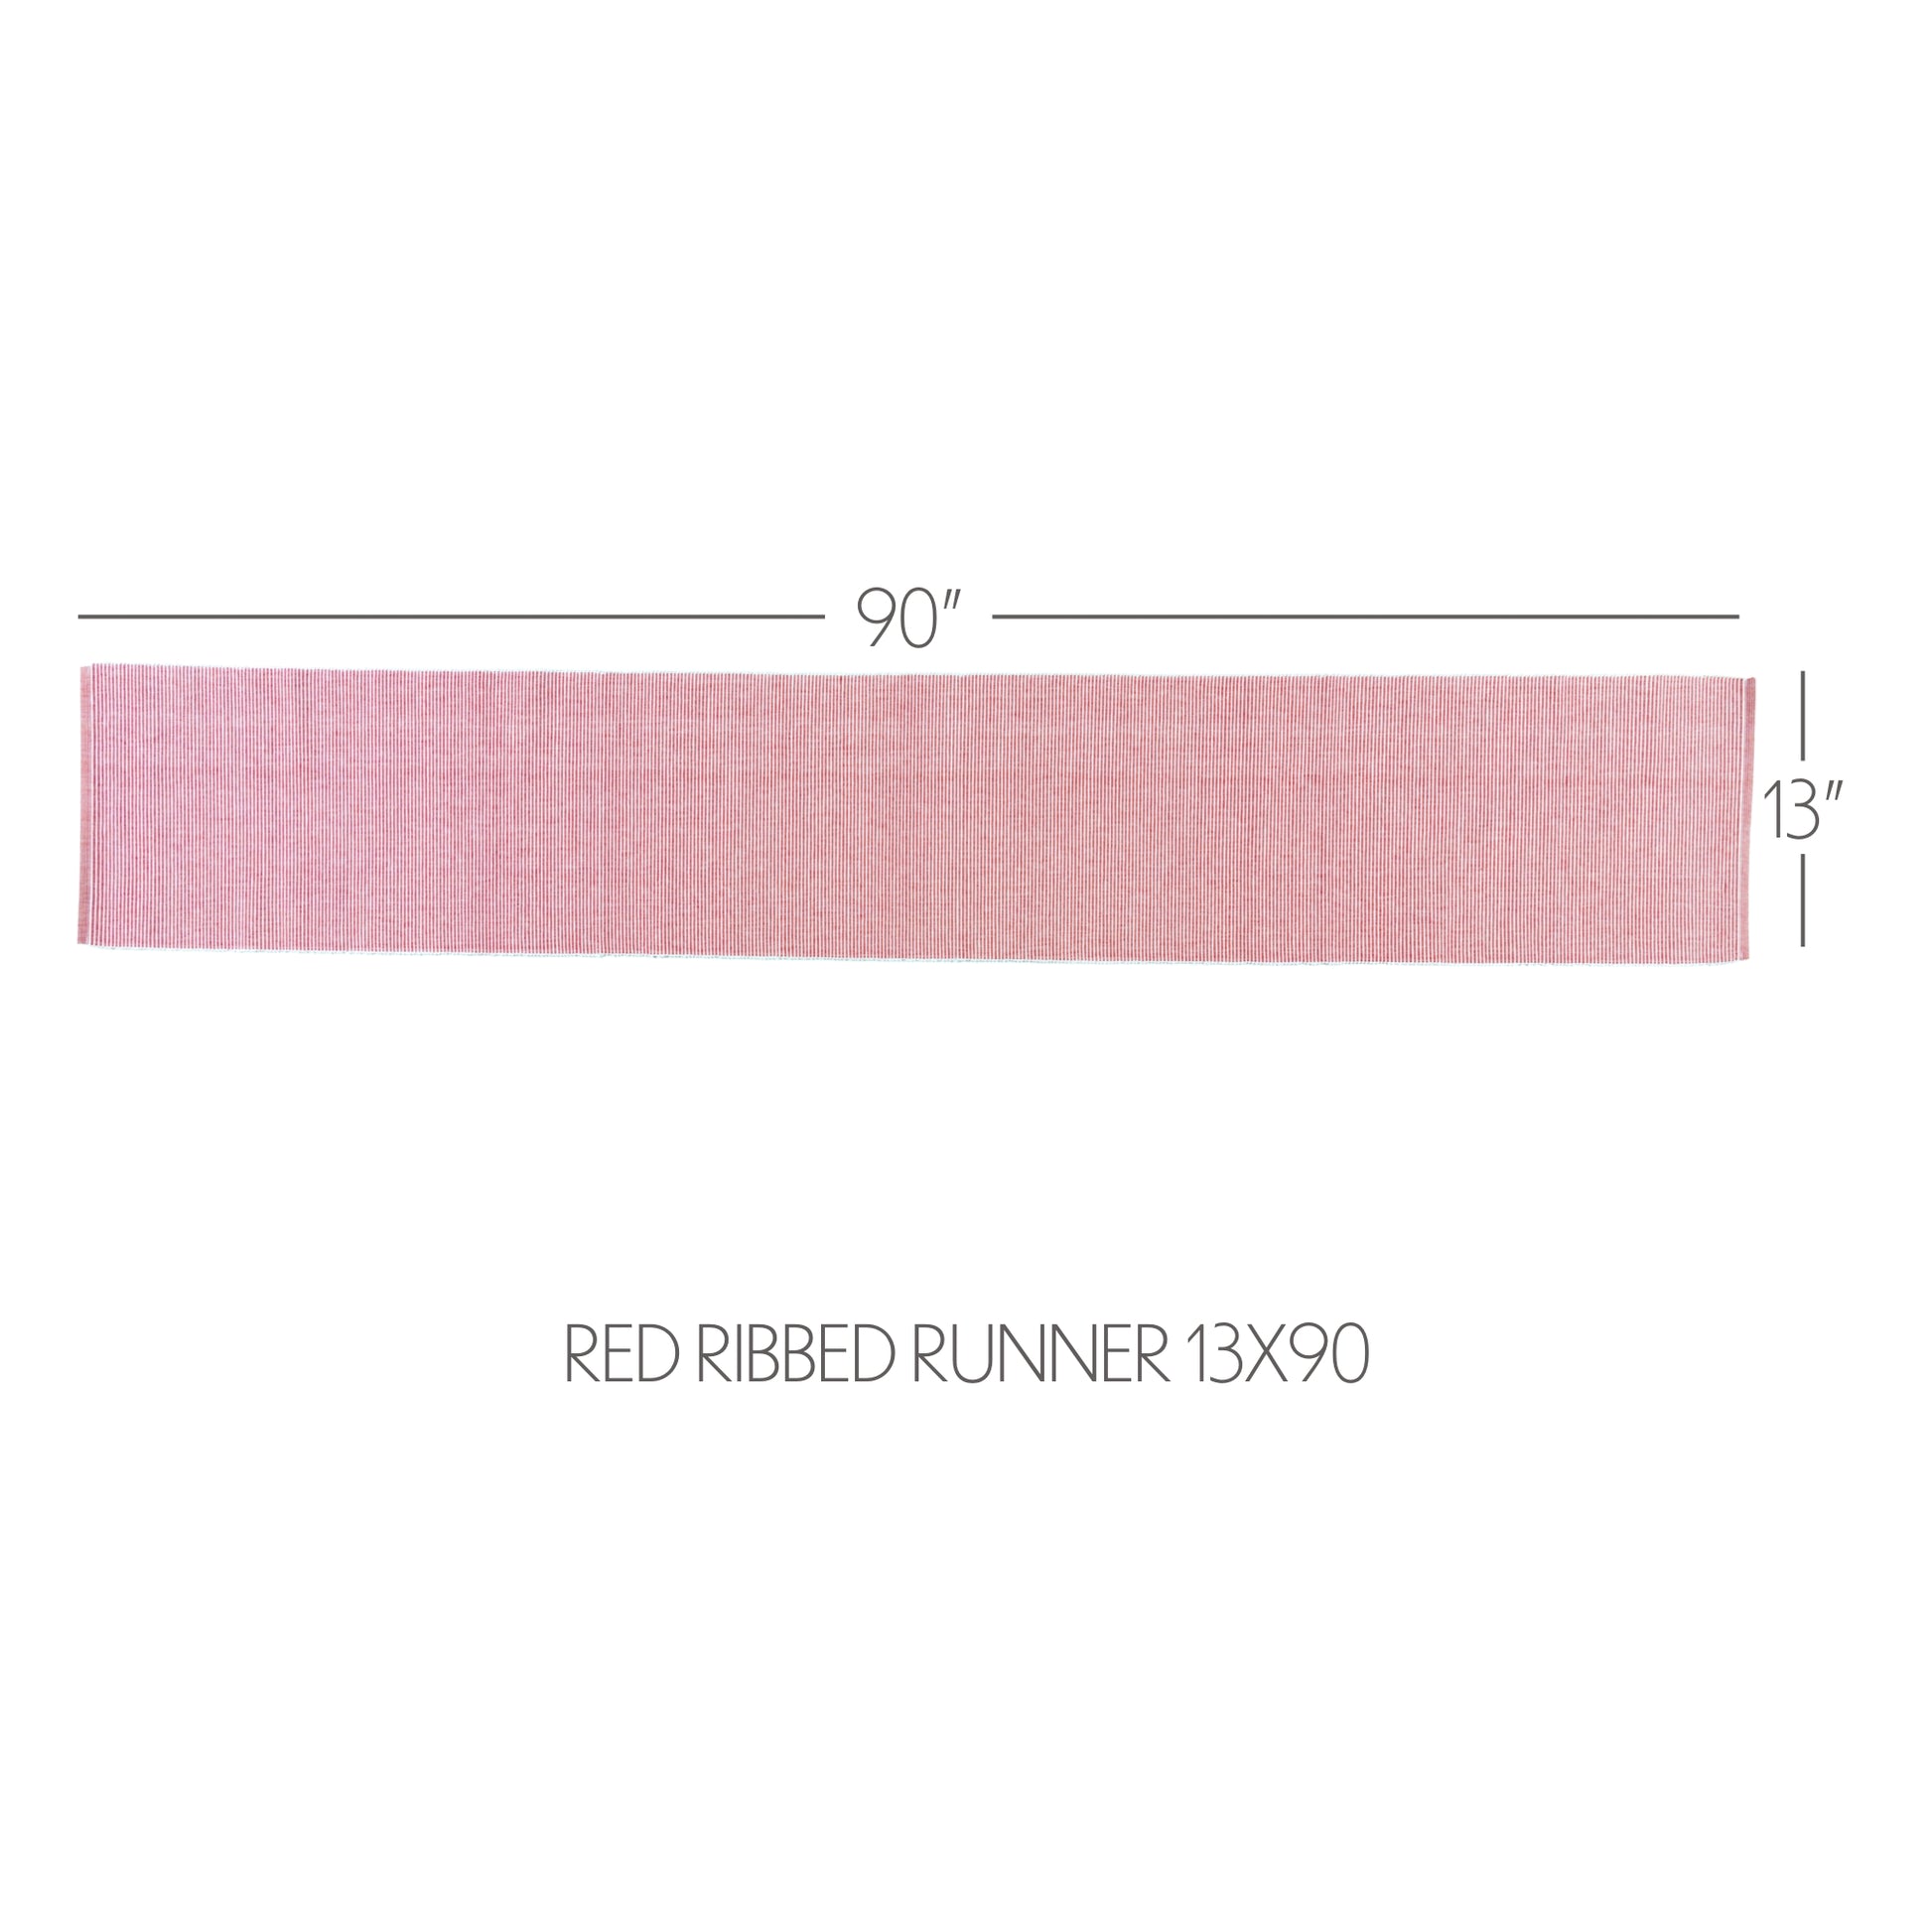 38563-Ashton-Red-Ribbed-Runner-13x90-image